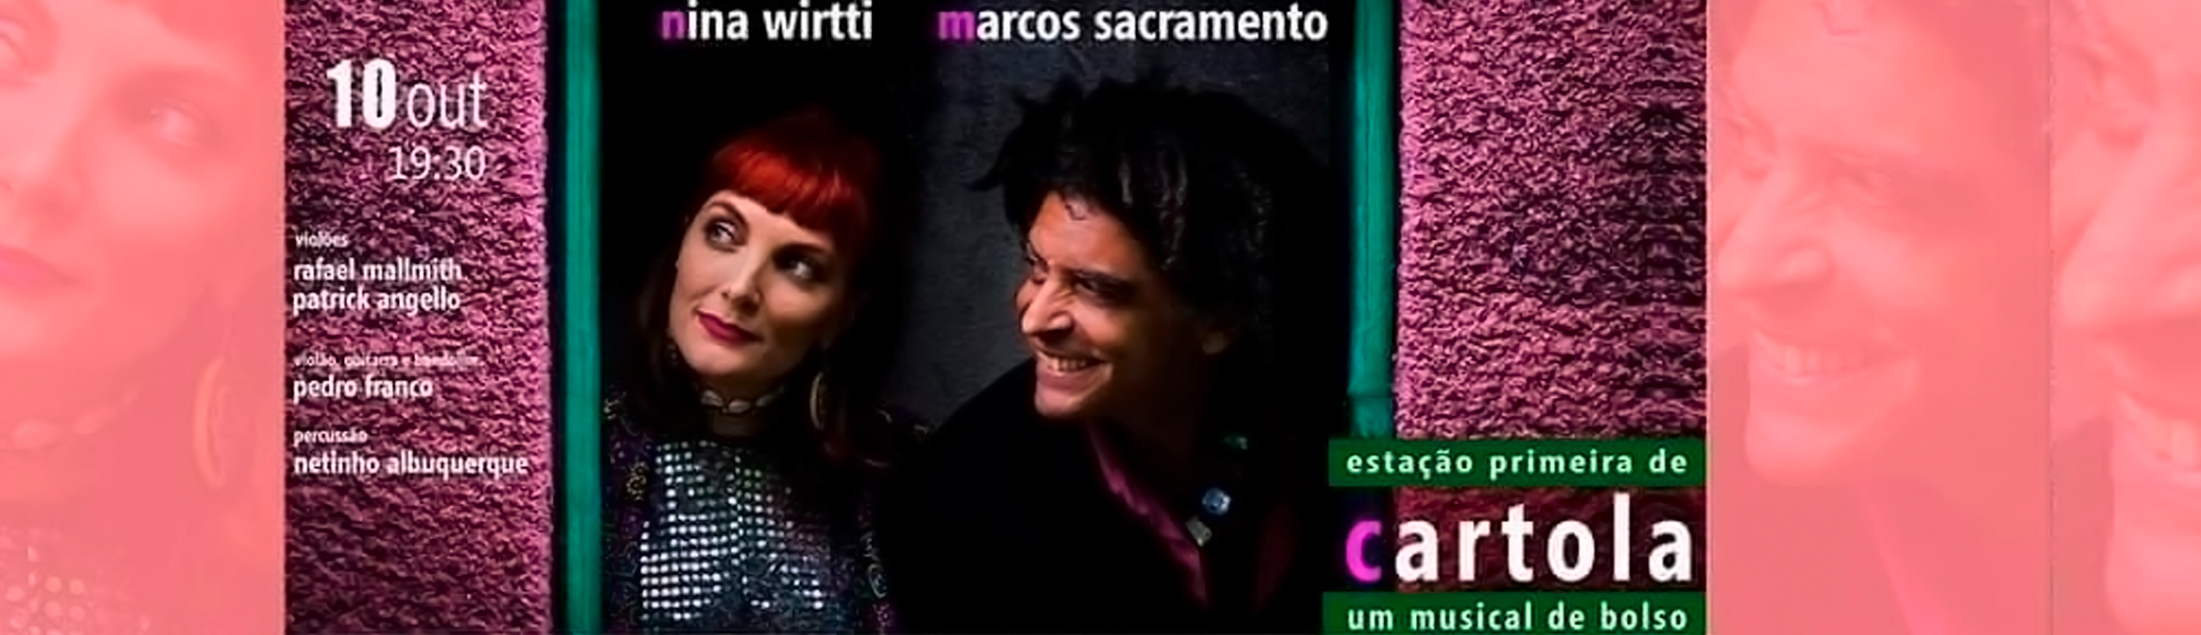 Nina Wirtti e Marcos Sacramento em 'Estação Primeira de Cartola' no Teatro Rival